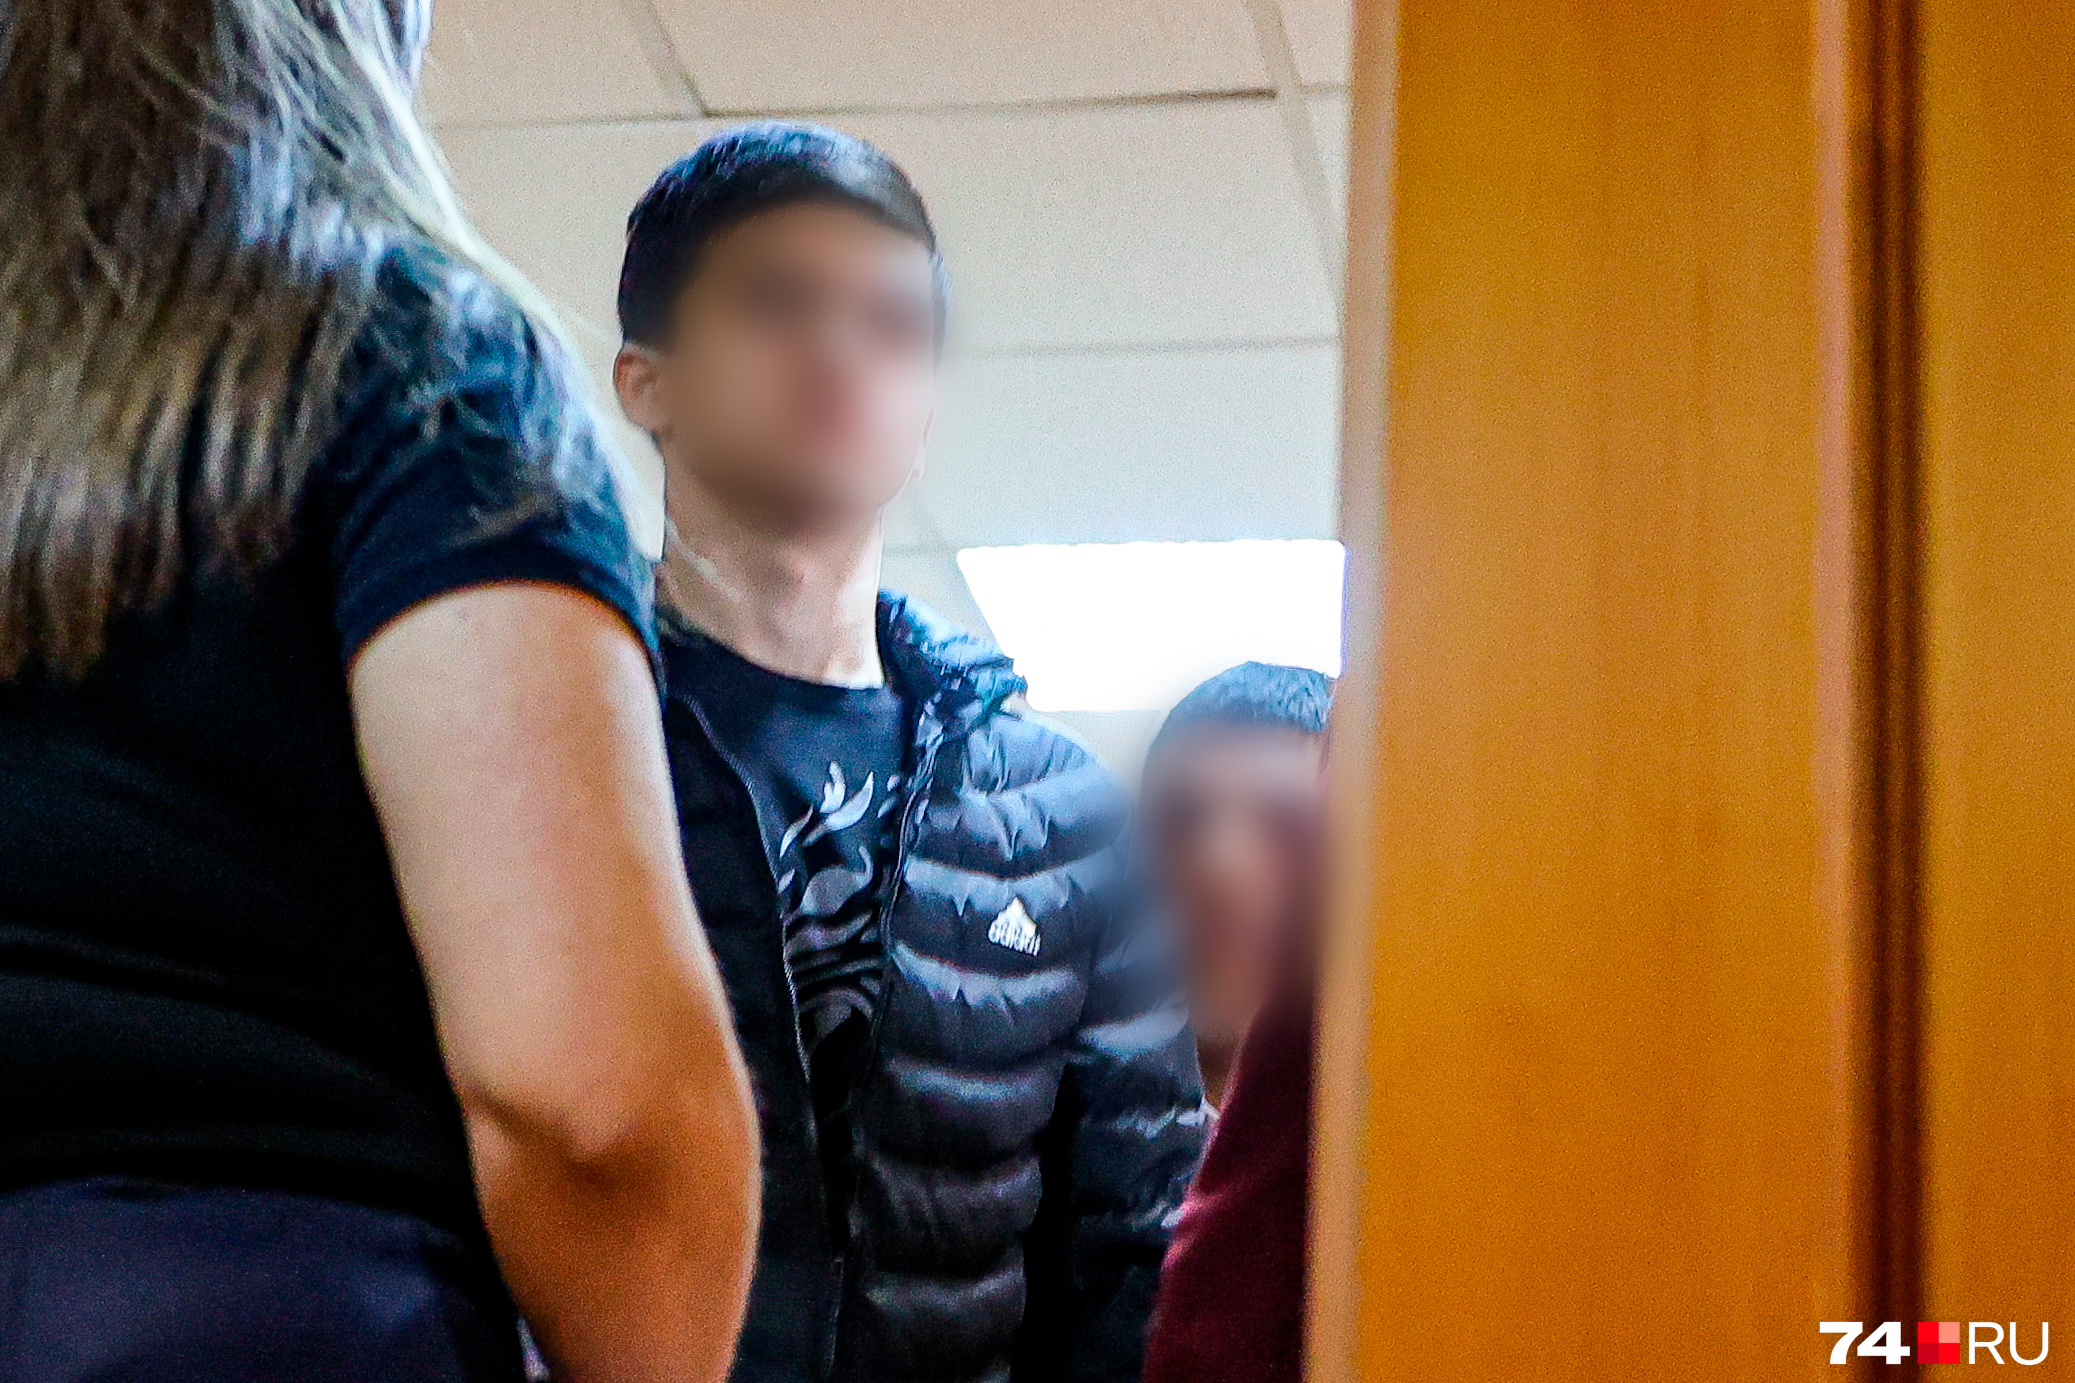 Нападение в школе Челябинск. В Казахстане подросток напал на школу.